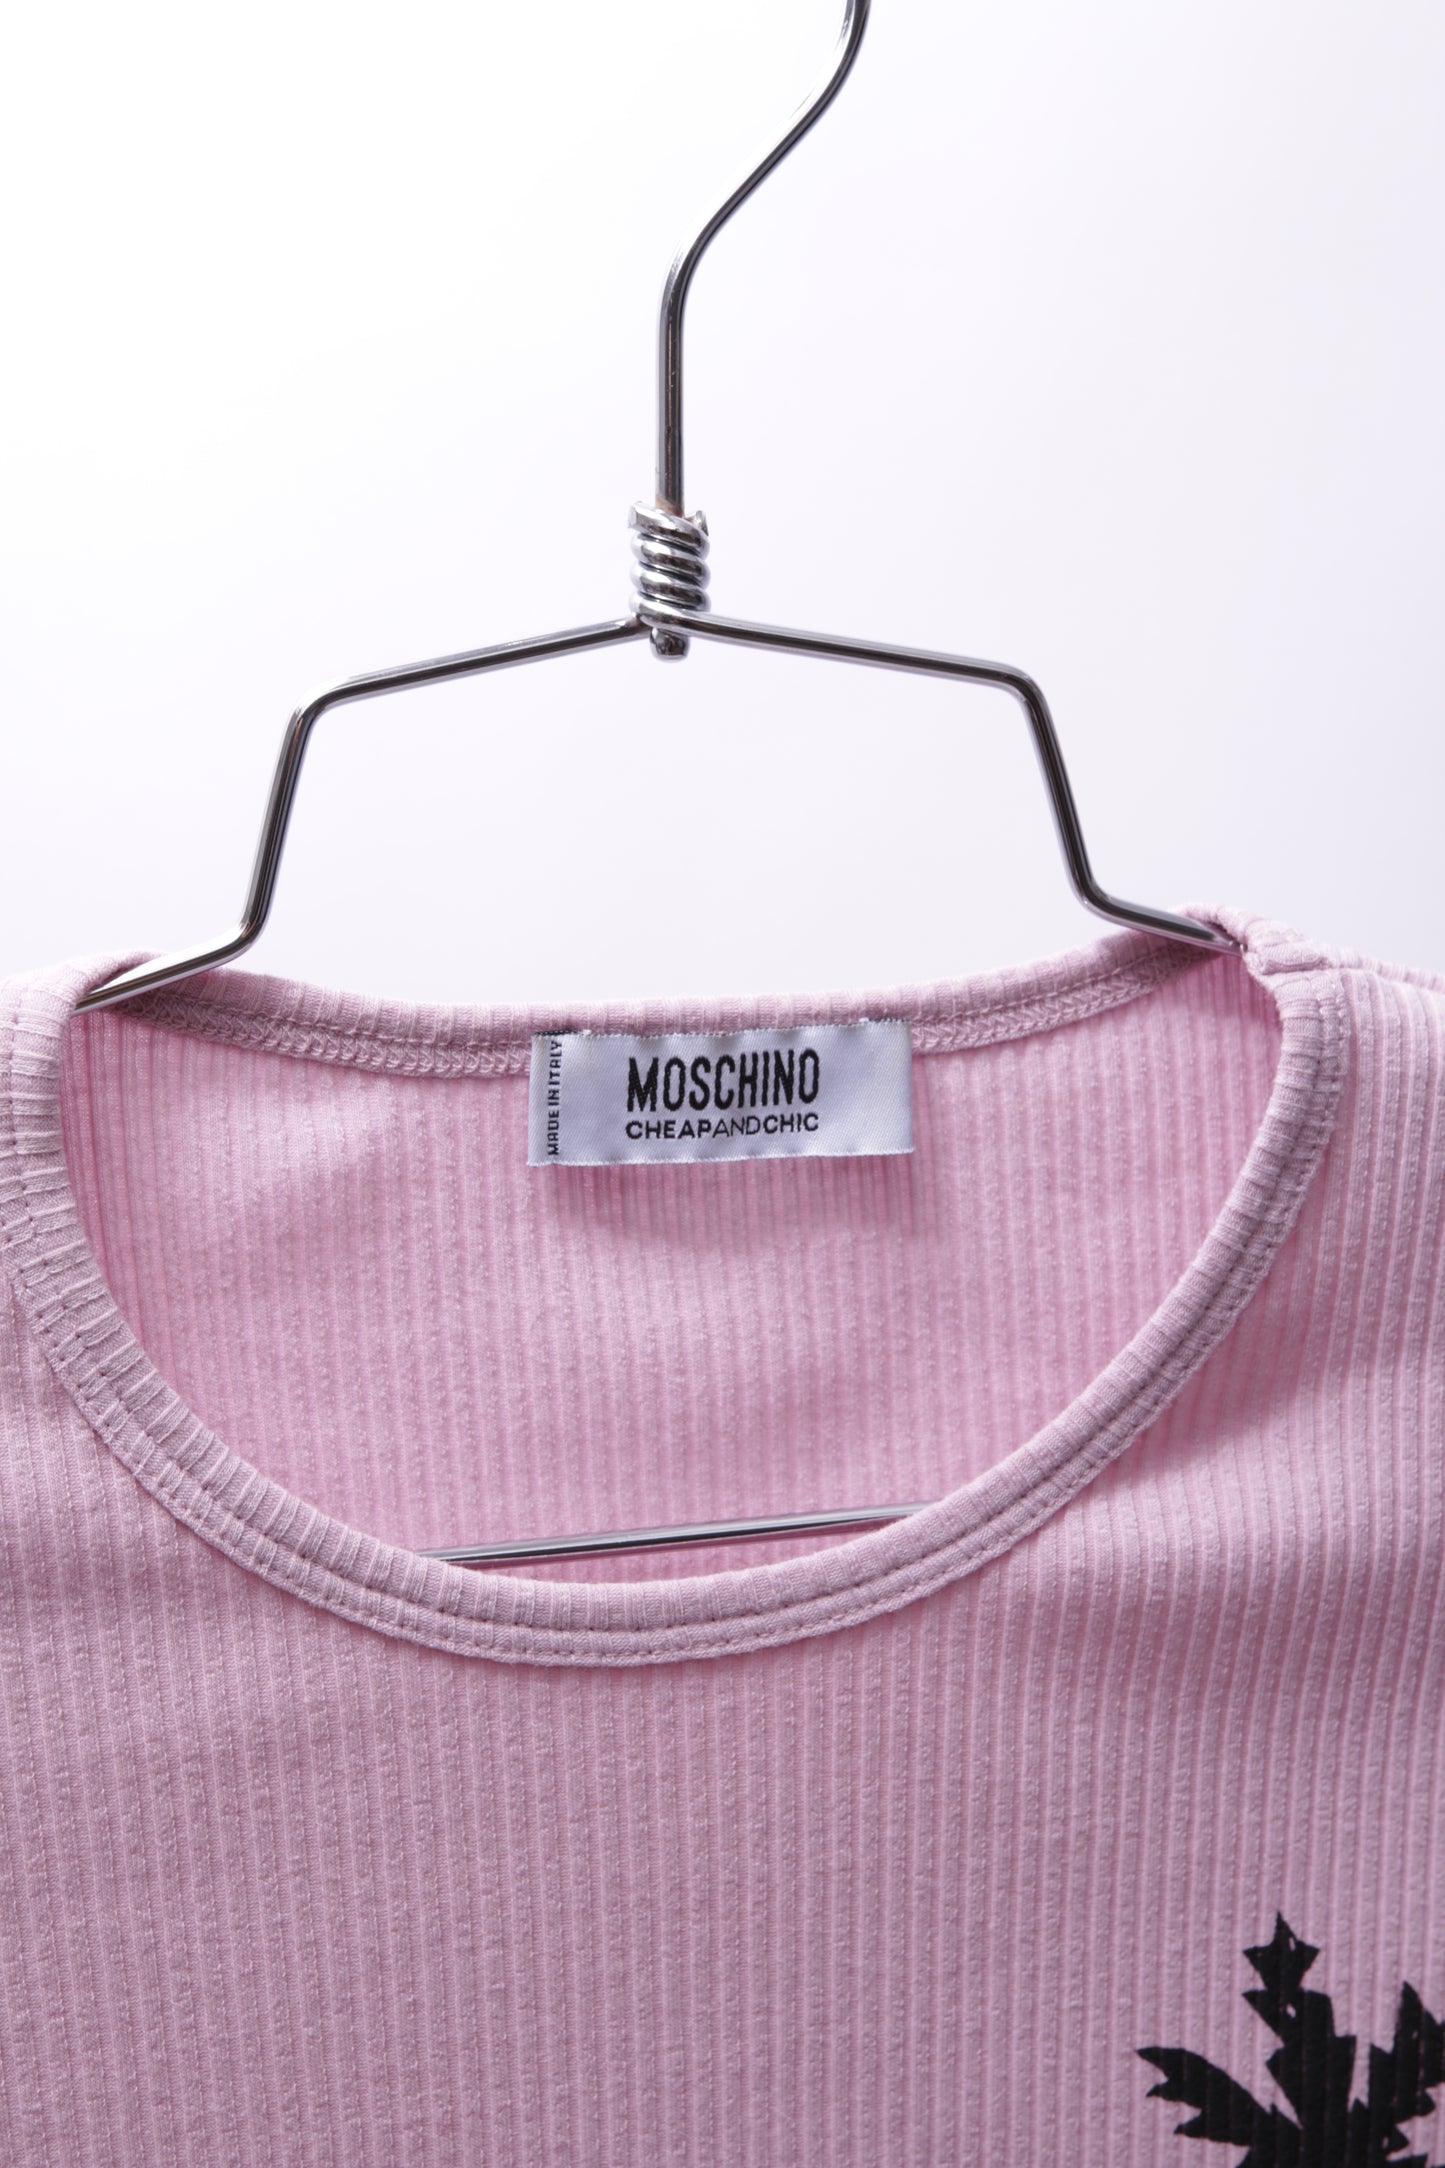 Moschino printed t-shirt